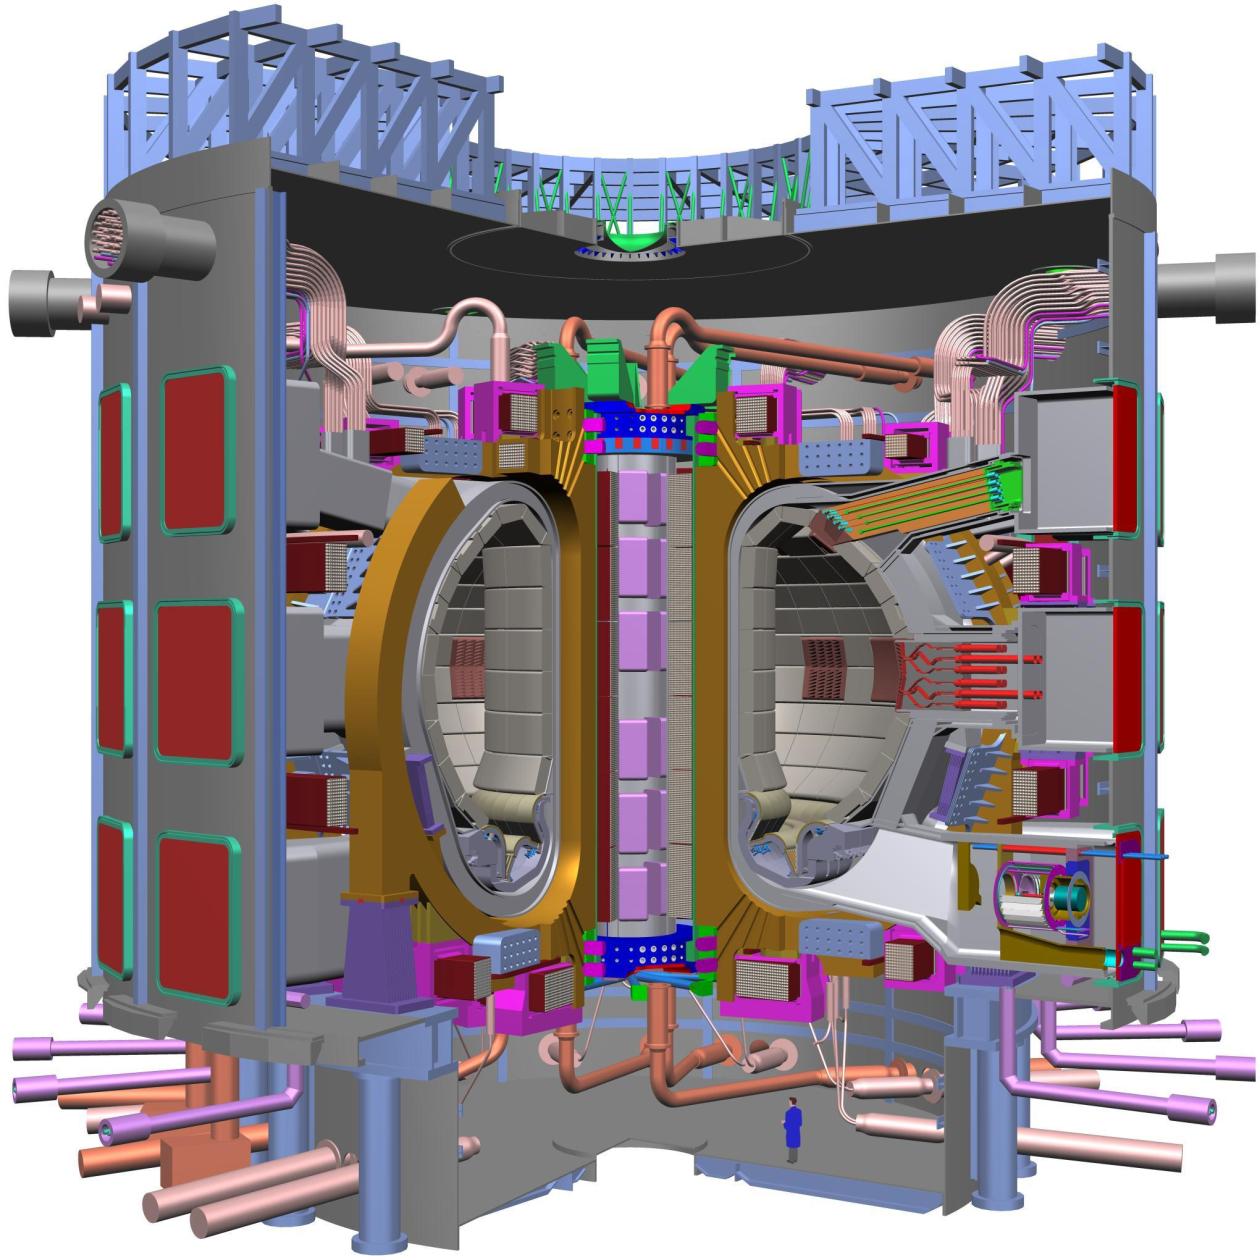 Obr. 4: Výzkumný reaktor ITER, ve spodní části pro srovnání výška člověka.[17] I přes úpravy harmonogramu již práce na ITERu probíhají, první plazma je plánováno na rok 2022.